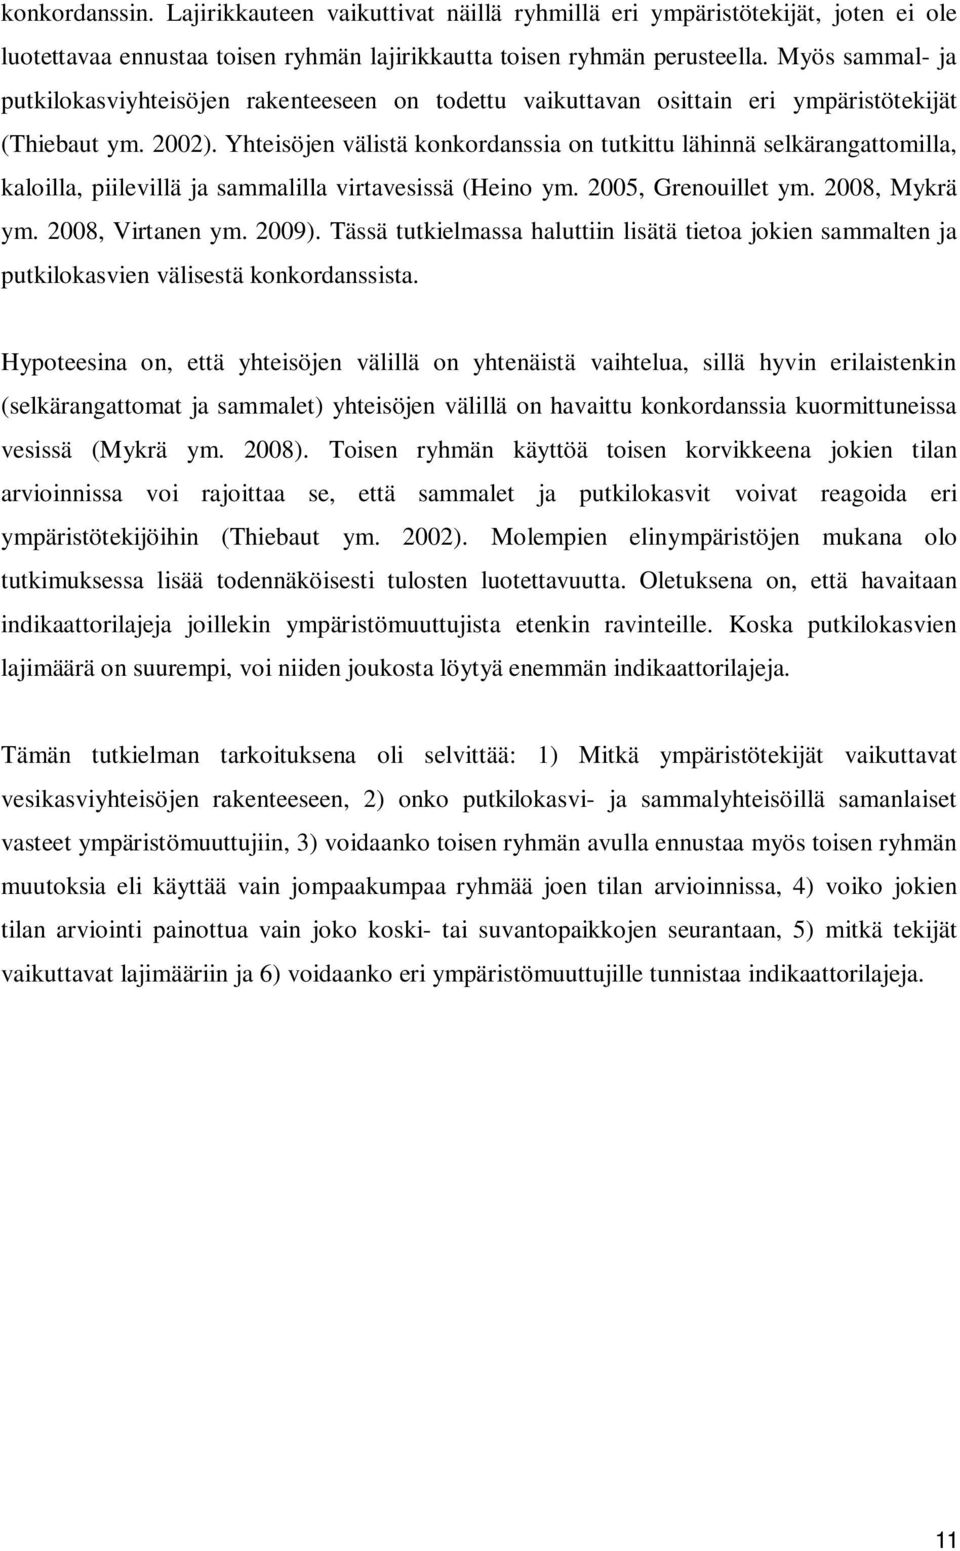 Yhteisöjen välistä konkordanssia on tutkittu lähinnä selkärangattomilla, kaloilla, piilevillä ja sammalilla virtavesissä (Heino ym. 2005, Grenouillet ym. 2008, Mykrä ym. 2008, Virtanen ym. 2009).